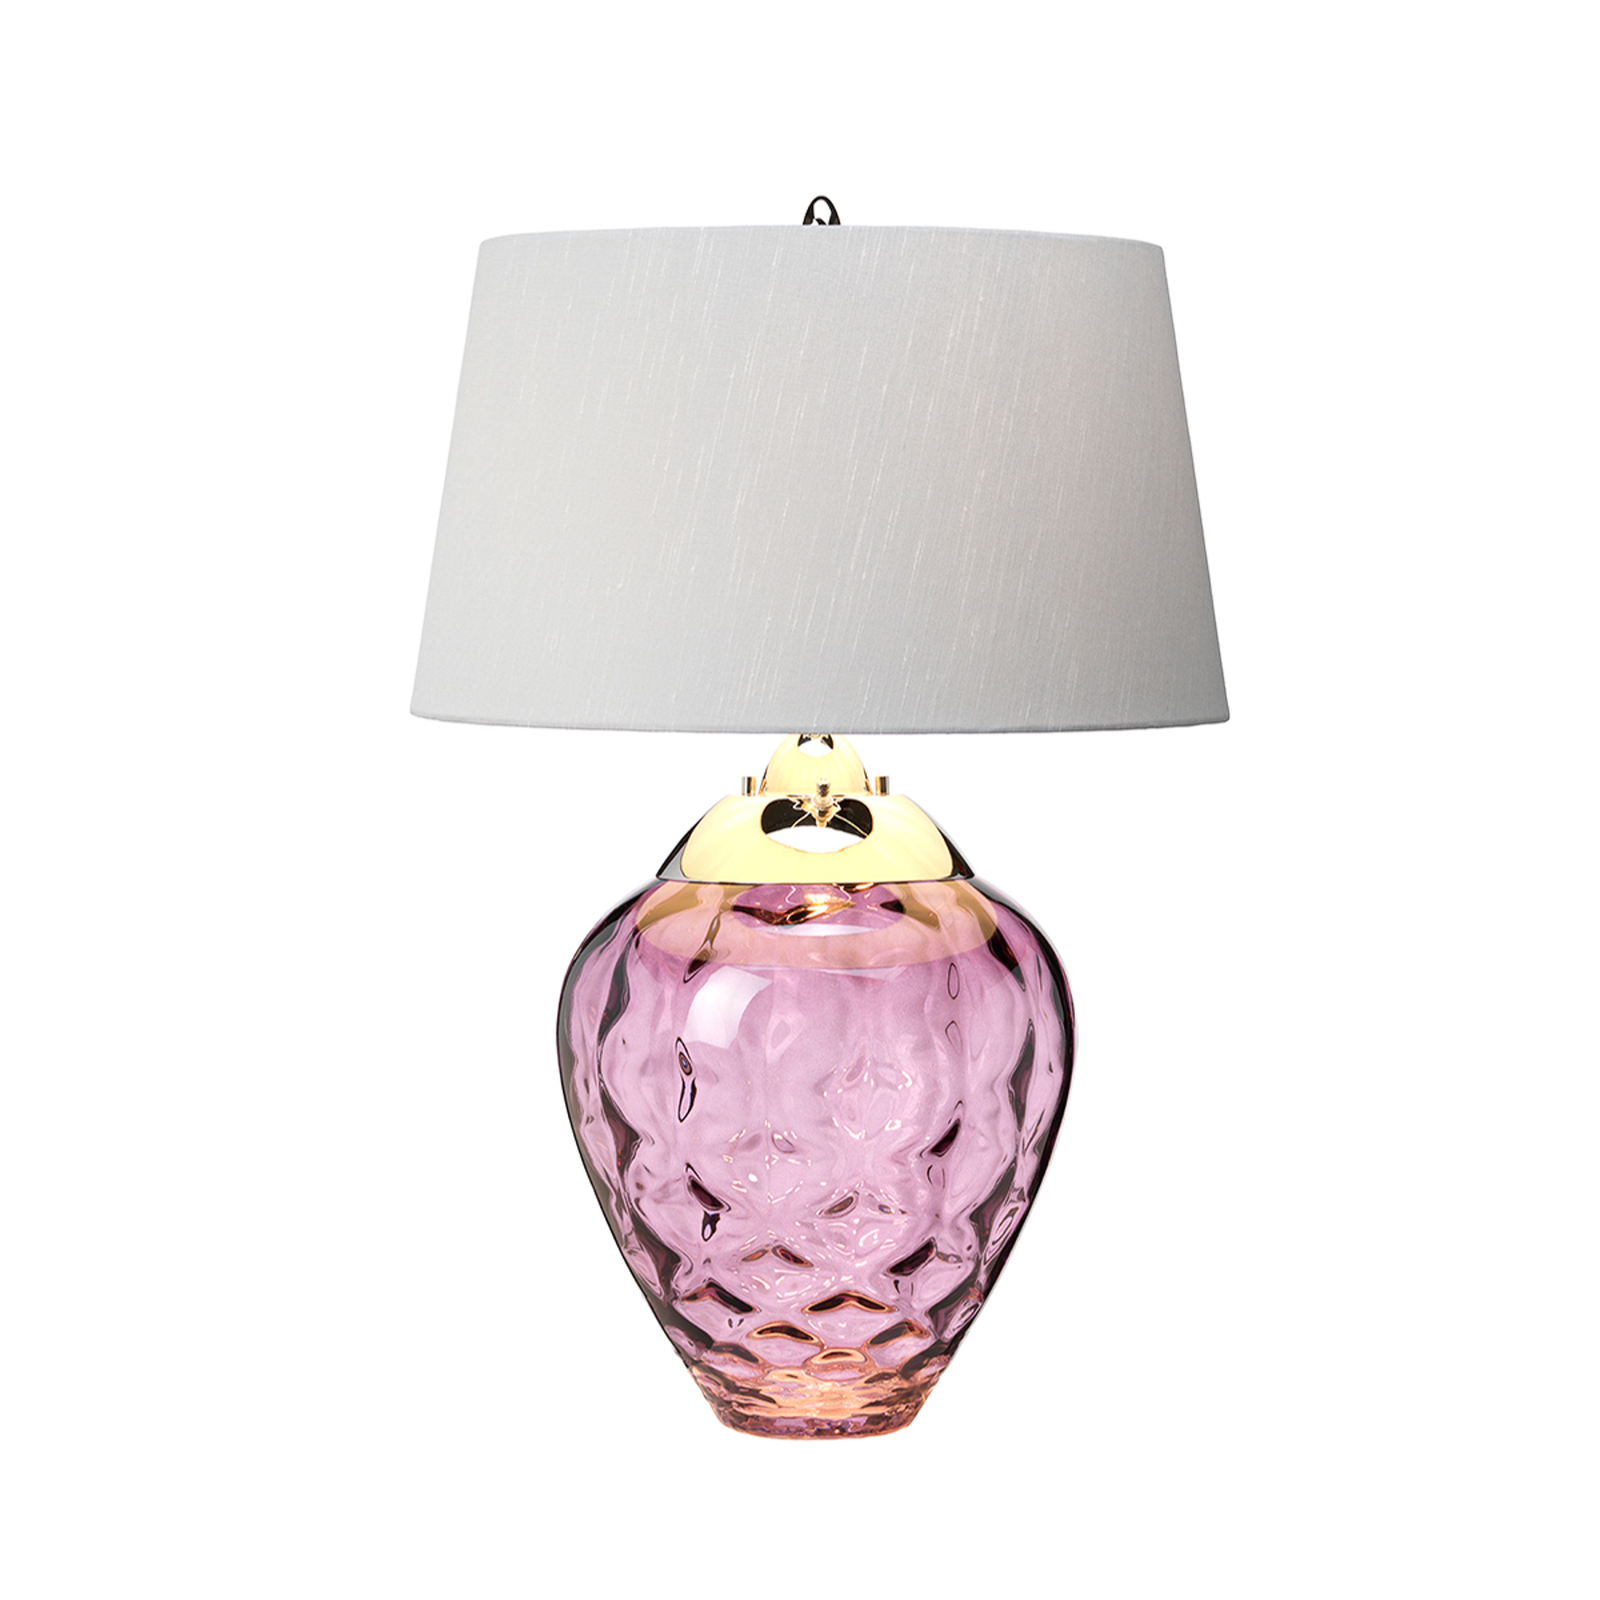 Stolna lampa Samara, Ø 45,7 cm, roza, tkanina, staklo, 2 svjetla